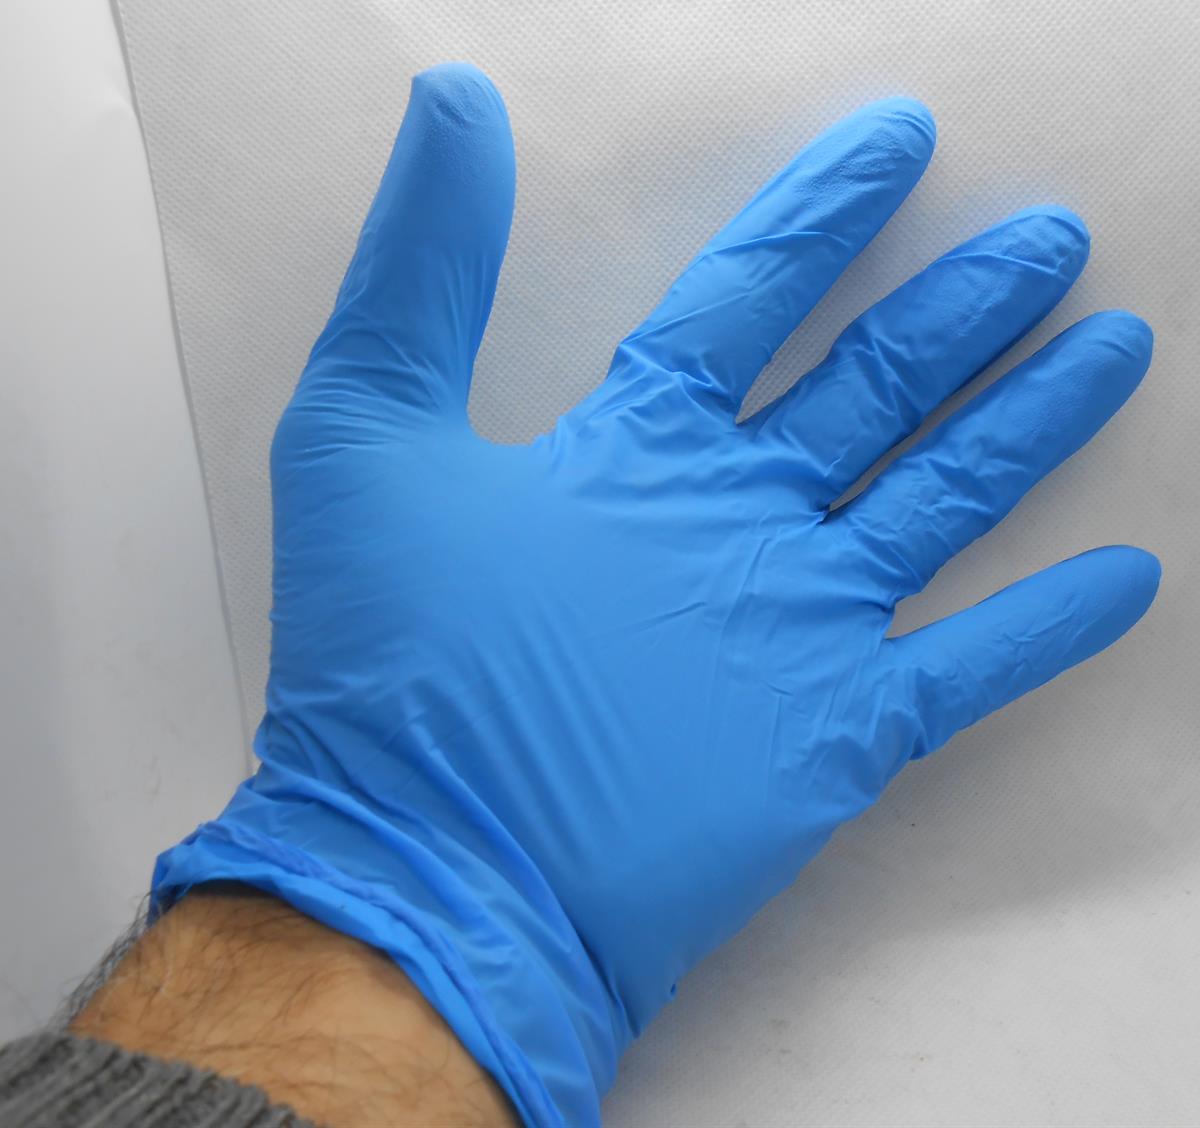 כפפות  ניטריל צבע כחול מידה XL לעבודה להגנה ולשמירה על היגינה אריזה  מכילה 100 כפפות